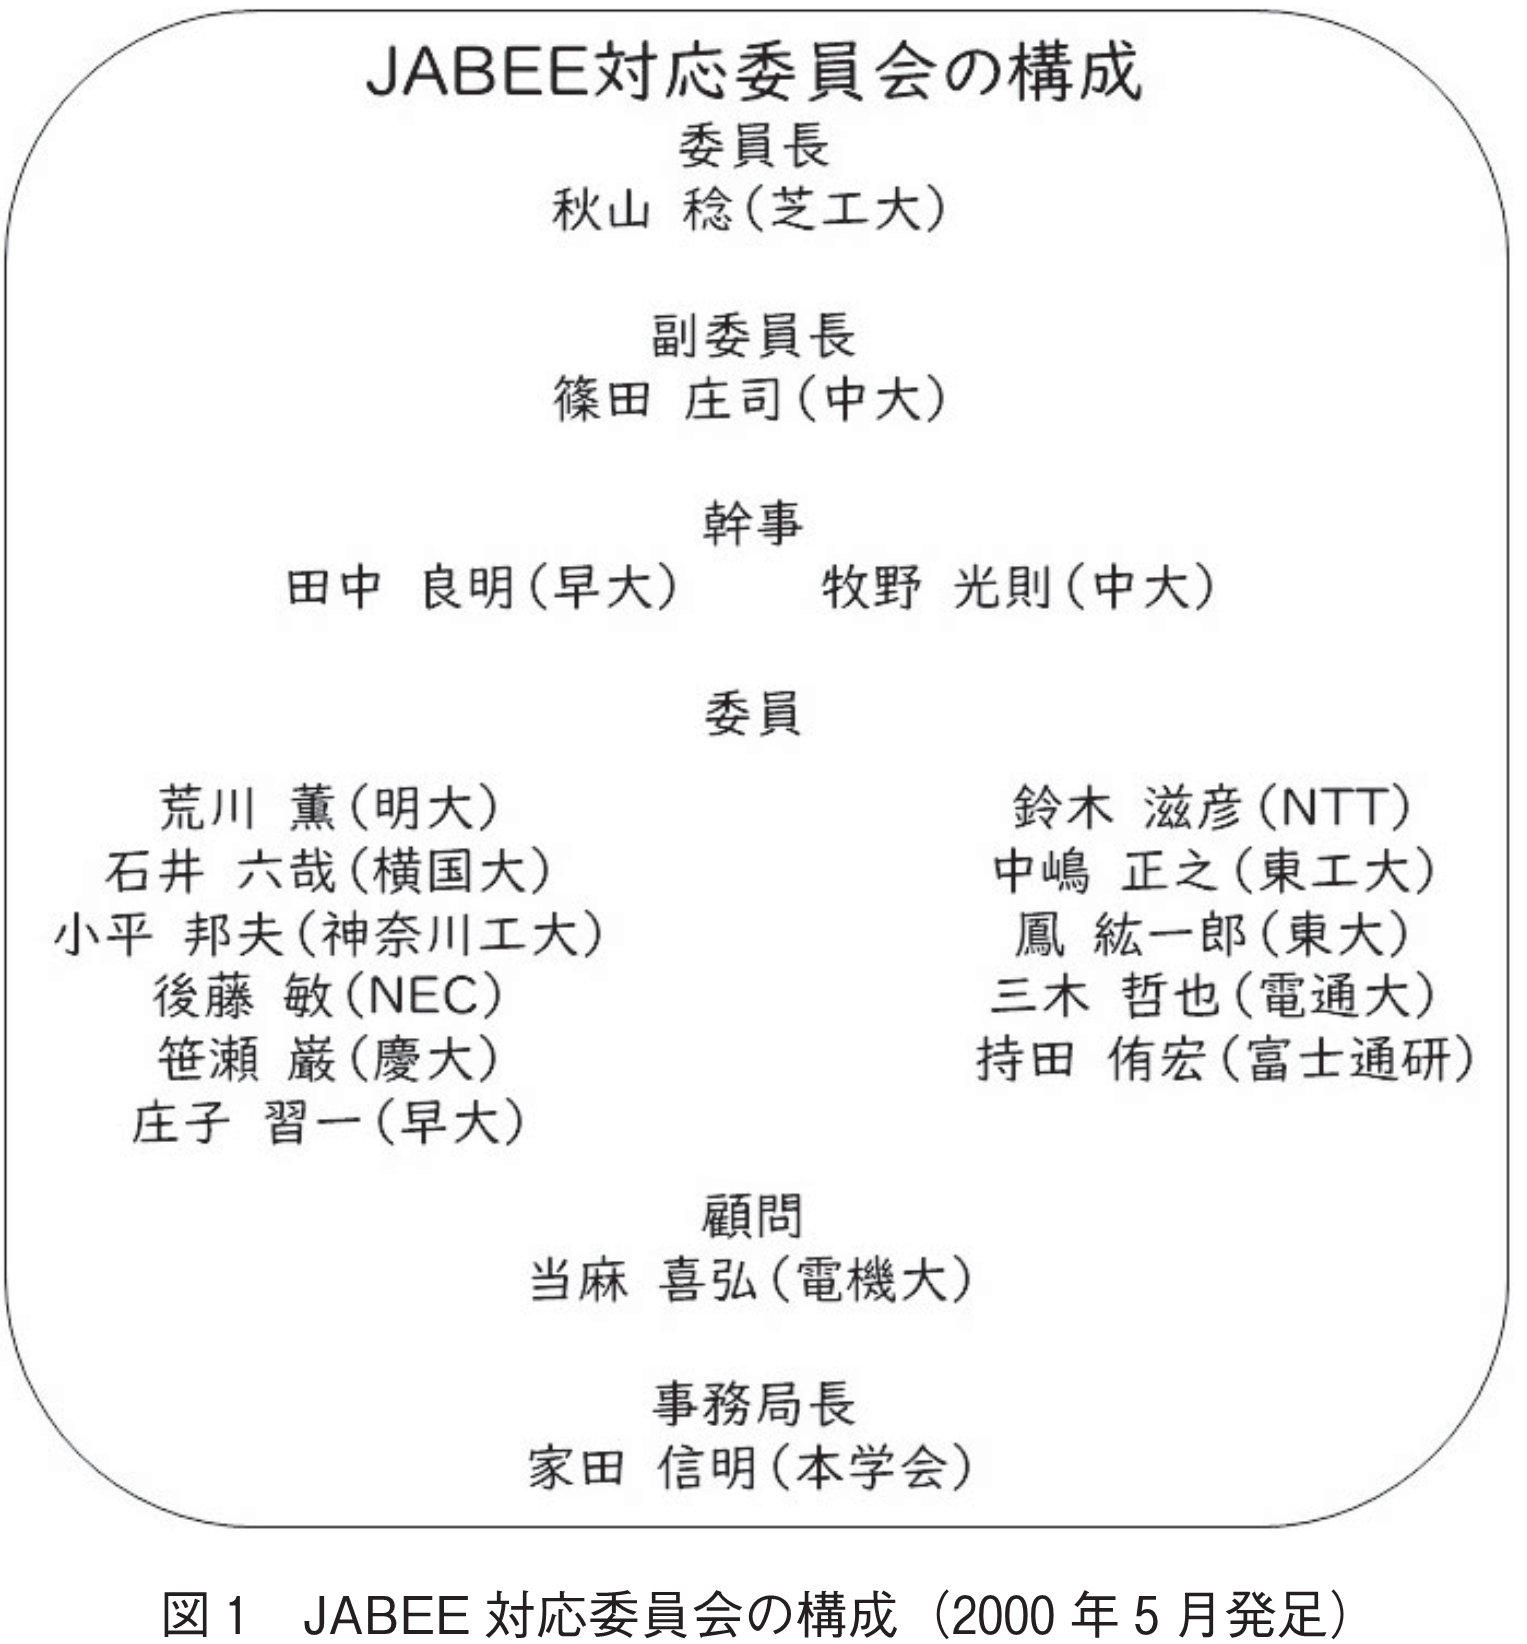 図1　JABEE対応委員会の構成（2000年5月発足）